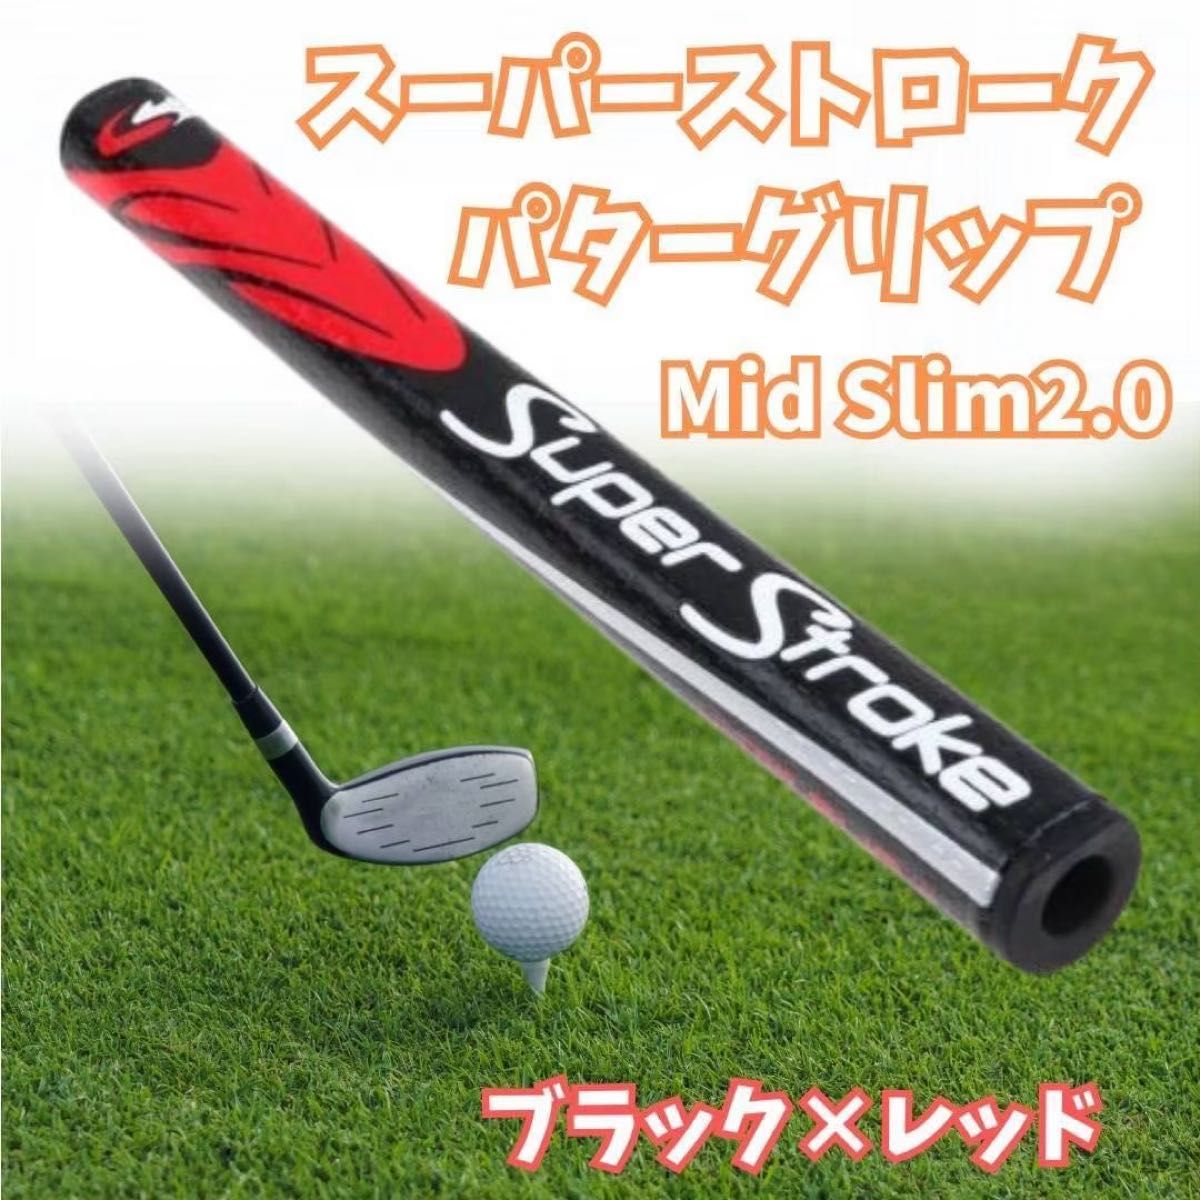 スーパーストローク SLIM 2.0ゴルフパター グリップ 高品質 赤黒色